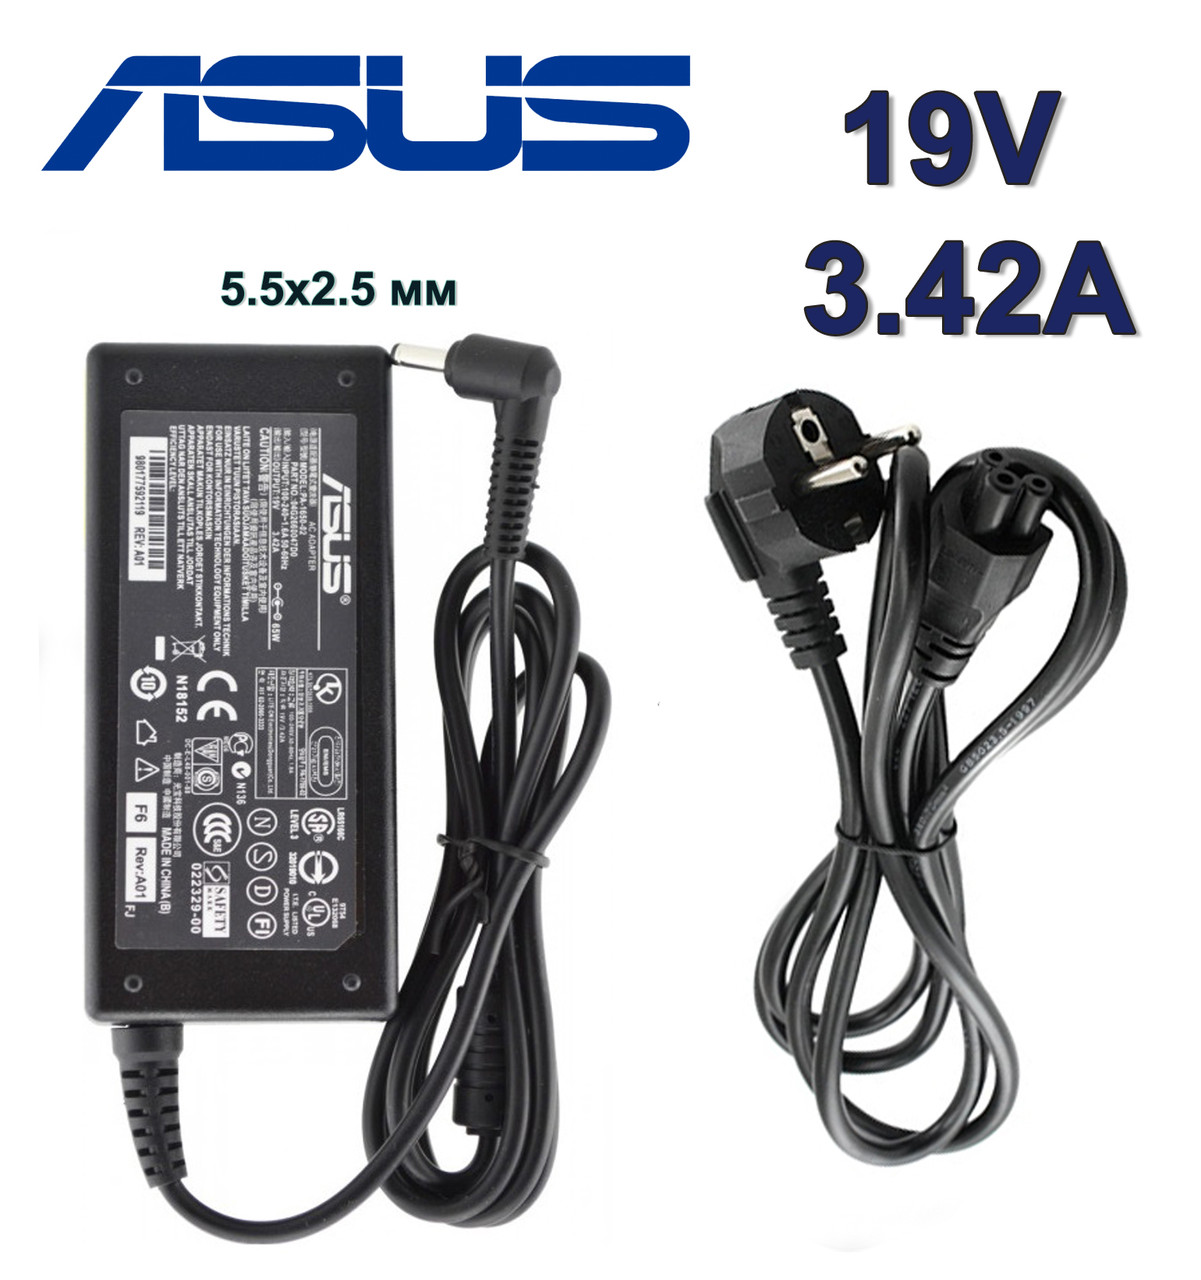 Зарядний пристрій для ноутбука Asus X75A 19V 3.42 A 65W штекер 5.5х2.5 мм (ADP-45BW B) зарядка, адаптер, блок живлення